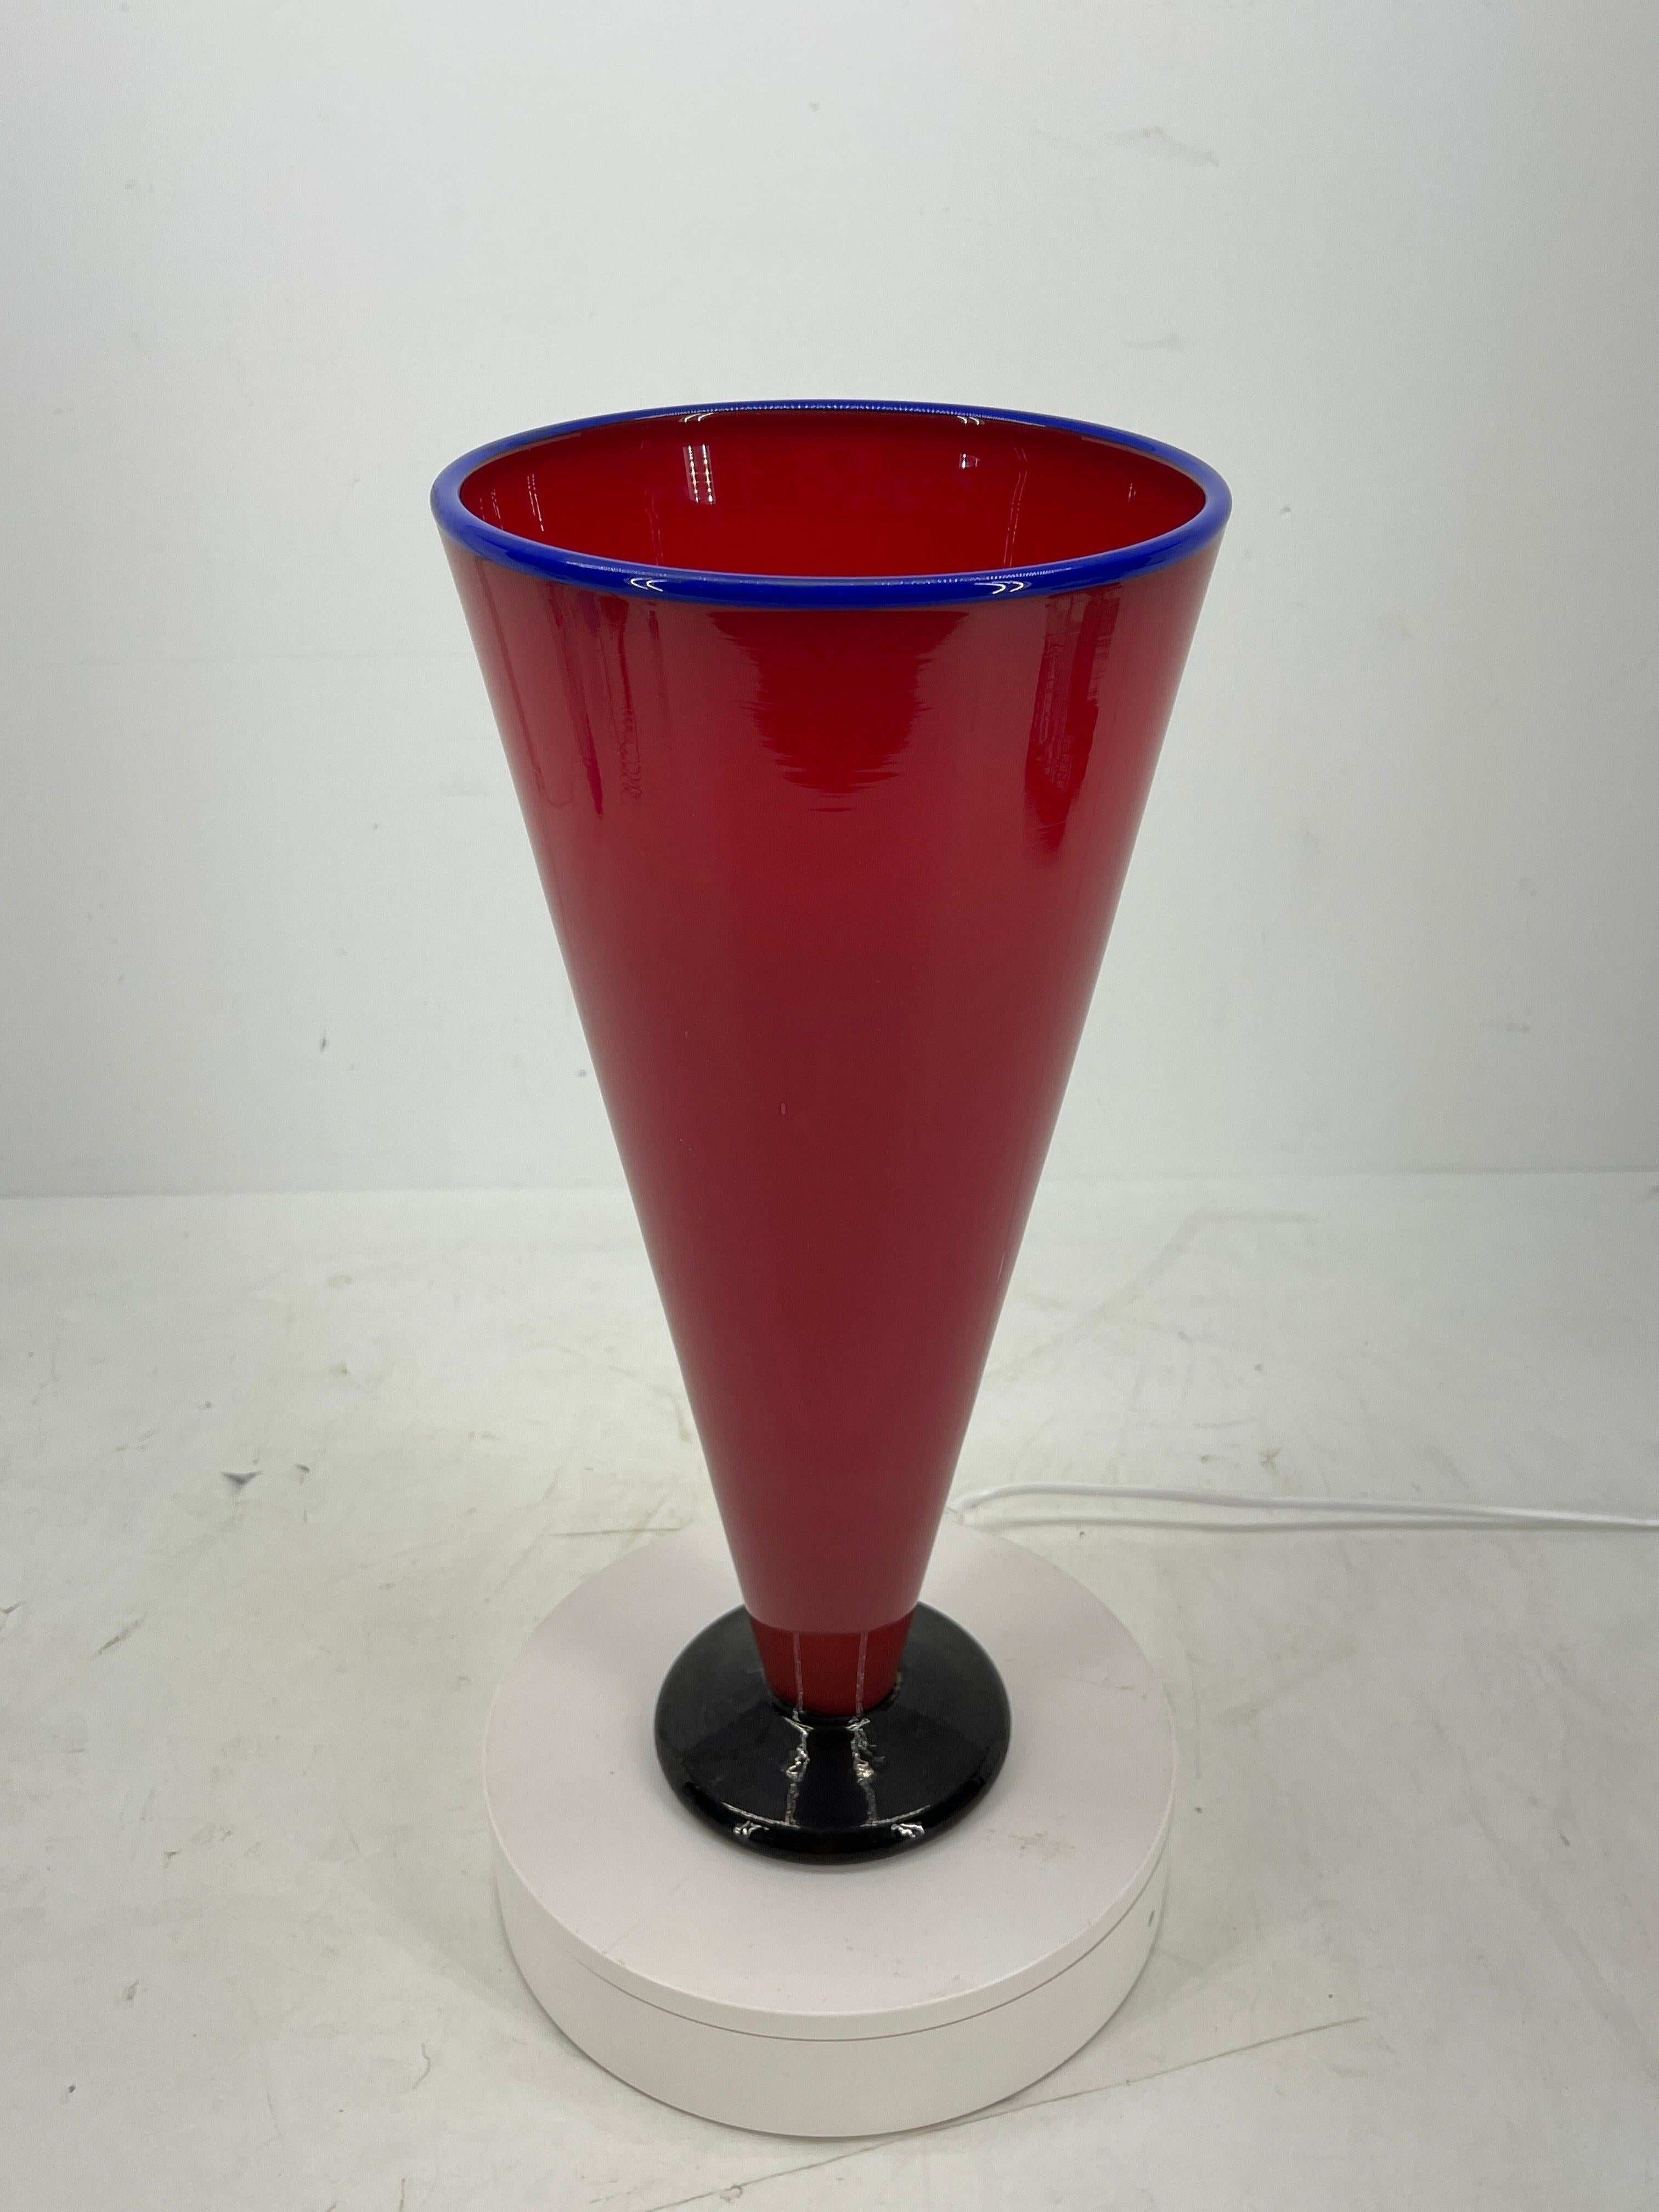 Vase moderne en verre soufflé rouge et bleu. Ce grand vase est d'un rouge riche avec un bord bleu cobalt. La base noire rencontre le verre rouge, ce qui rend le vase saisissant et moderne. Il est suffisamment grand pour orner une table en tant que